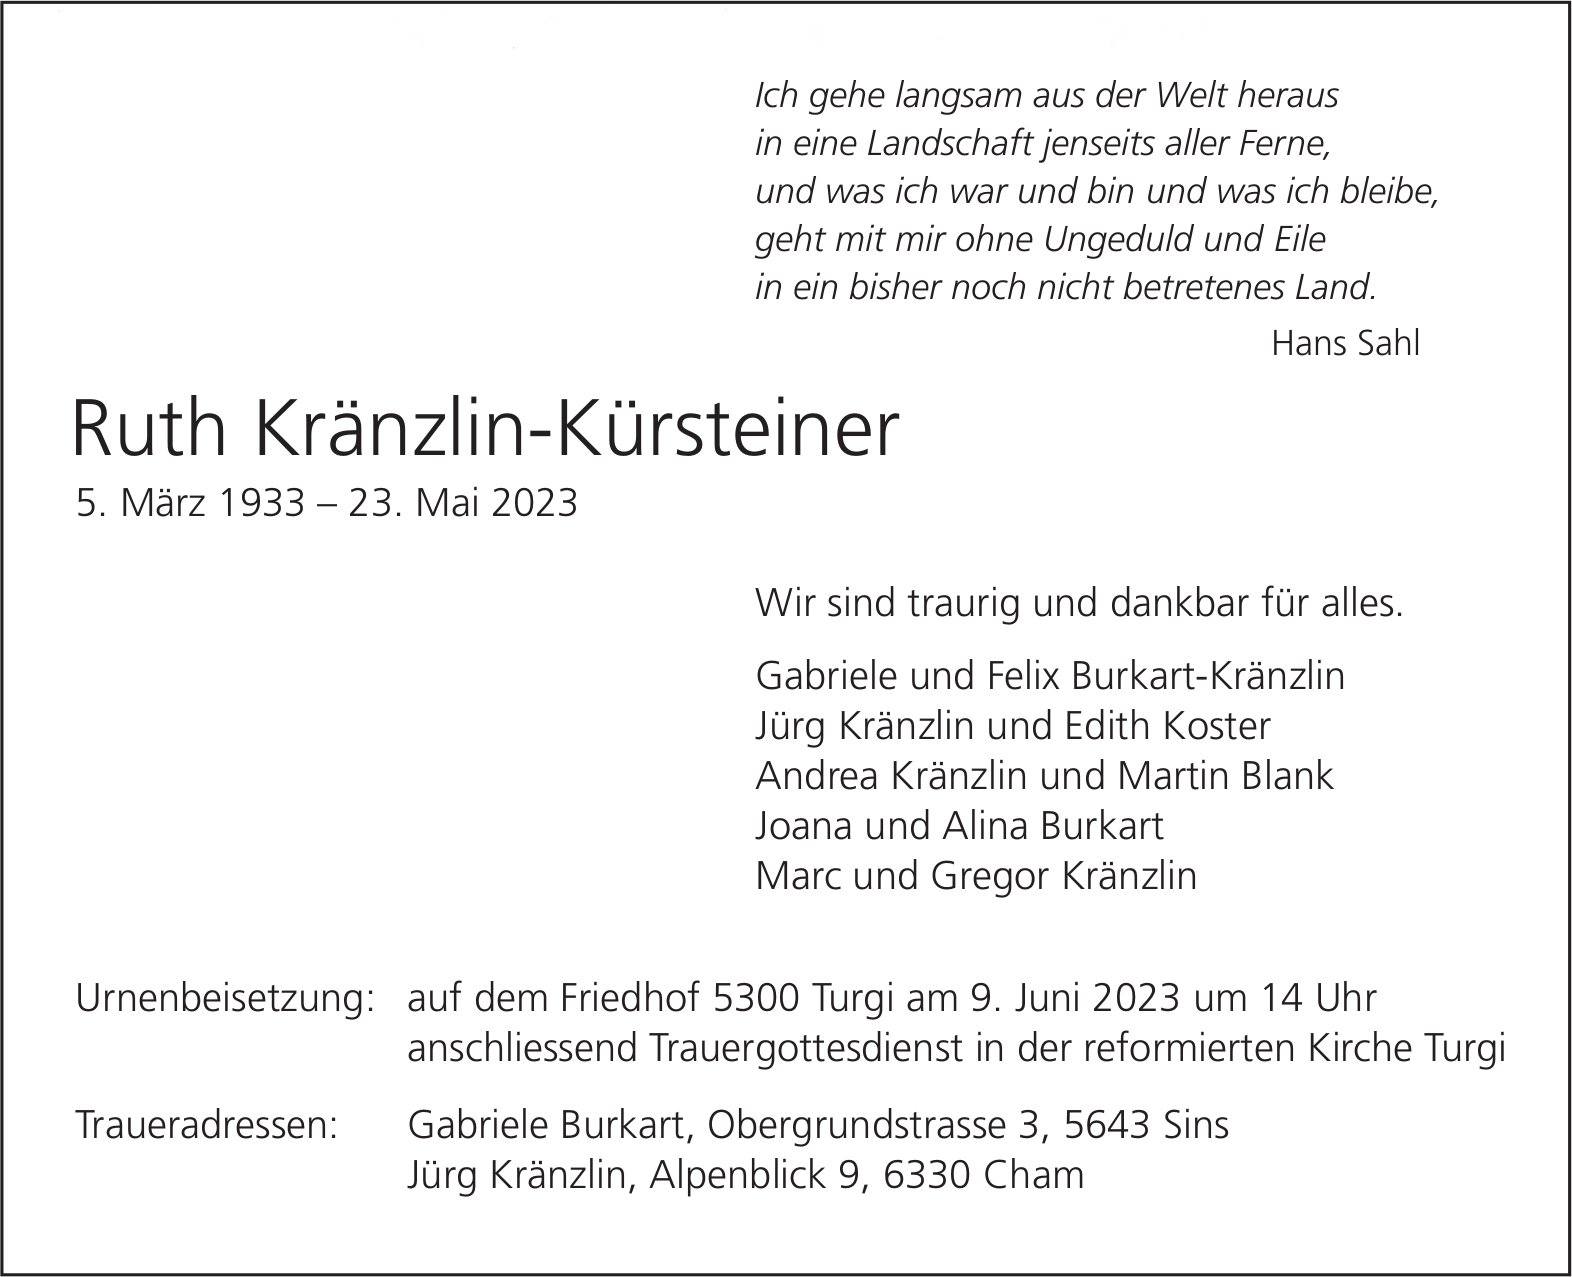 Kränzlin-Kürsteiner Ruth, Mai 2023 / TA